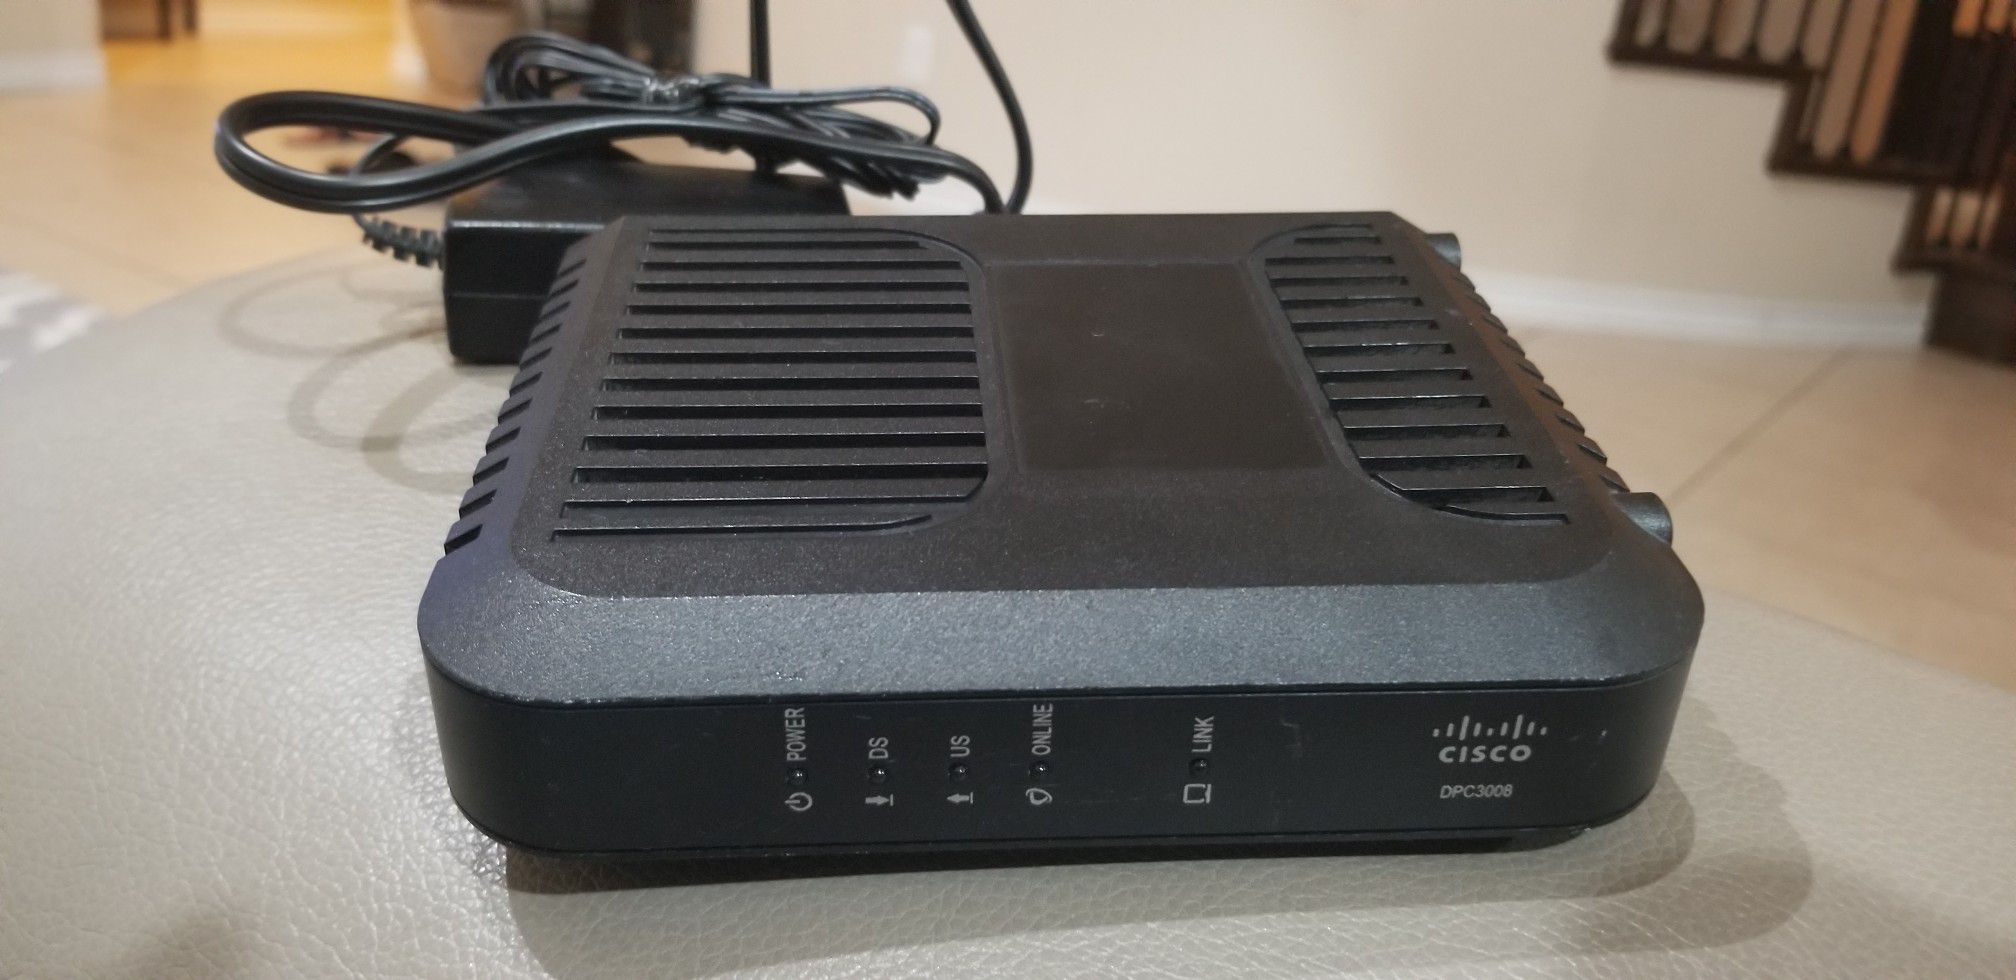 Cisco DPC3008 (Comcast, TWC, Cox Version) DOCSIS 3.0 Cable Modem ￼